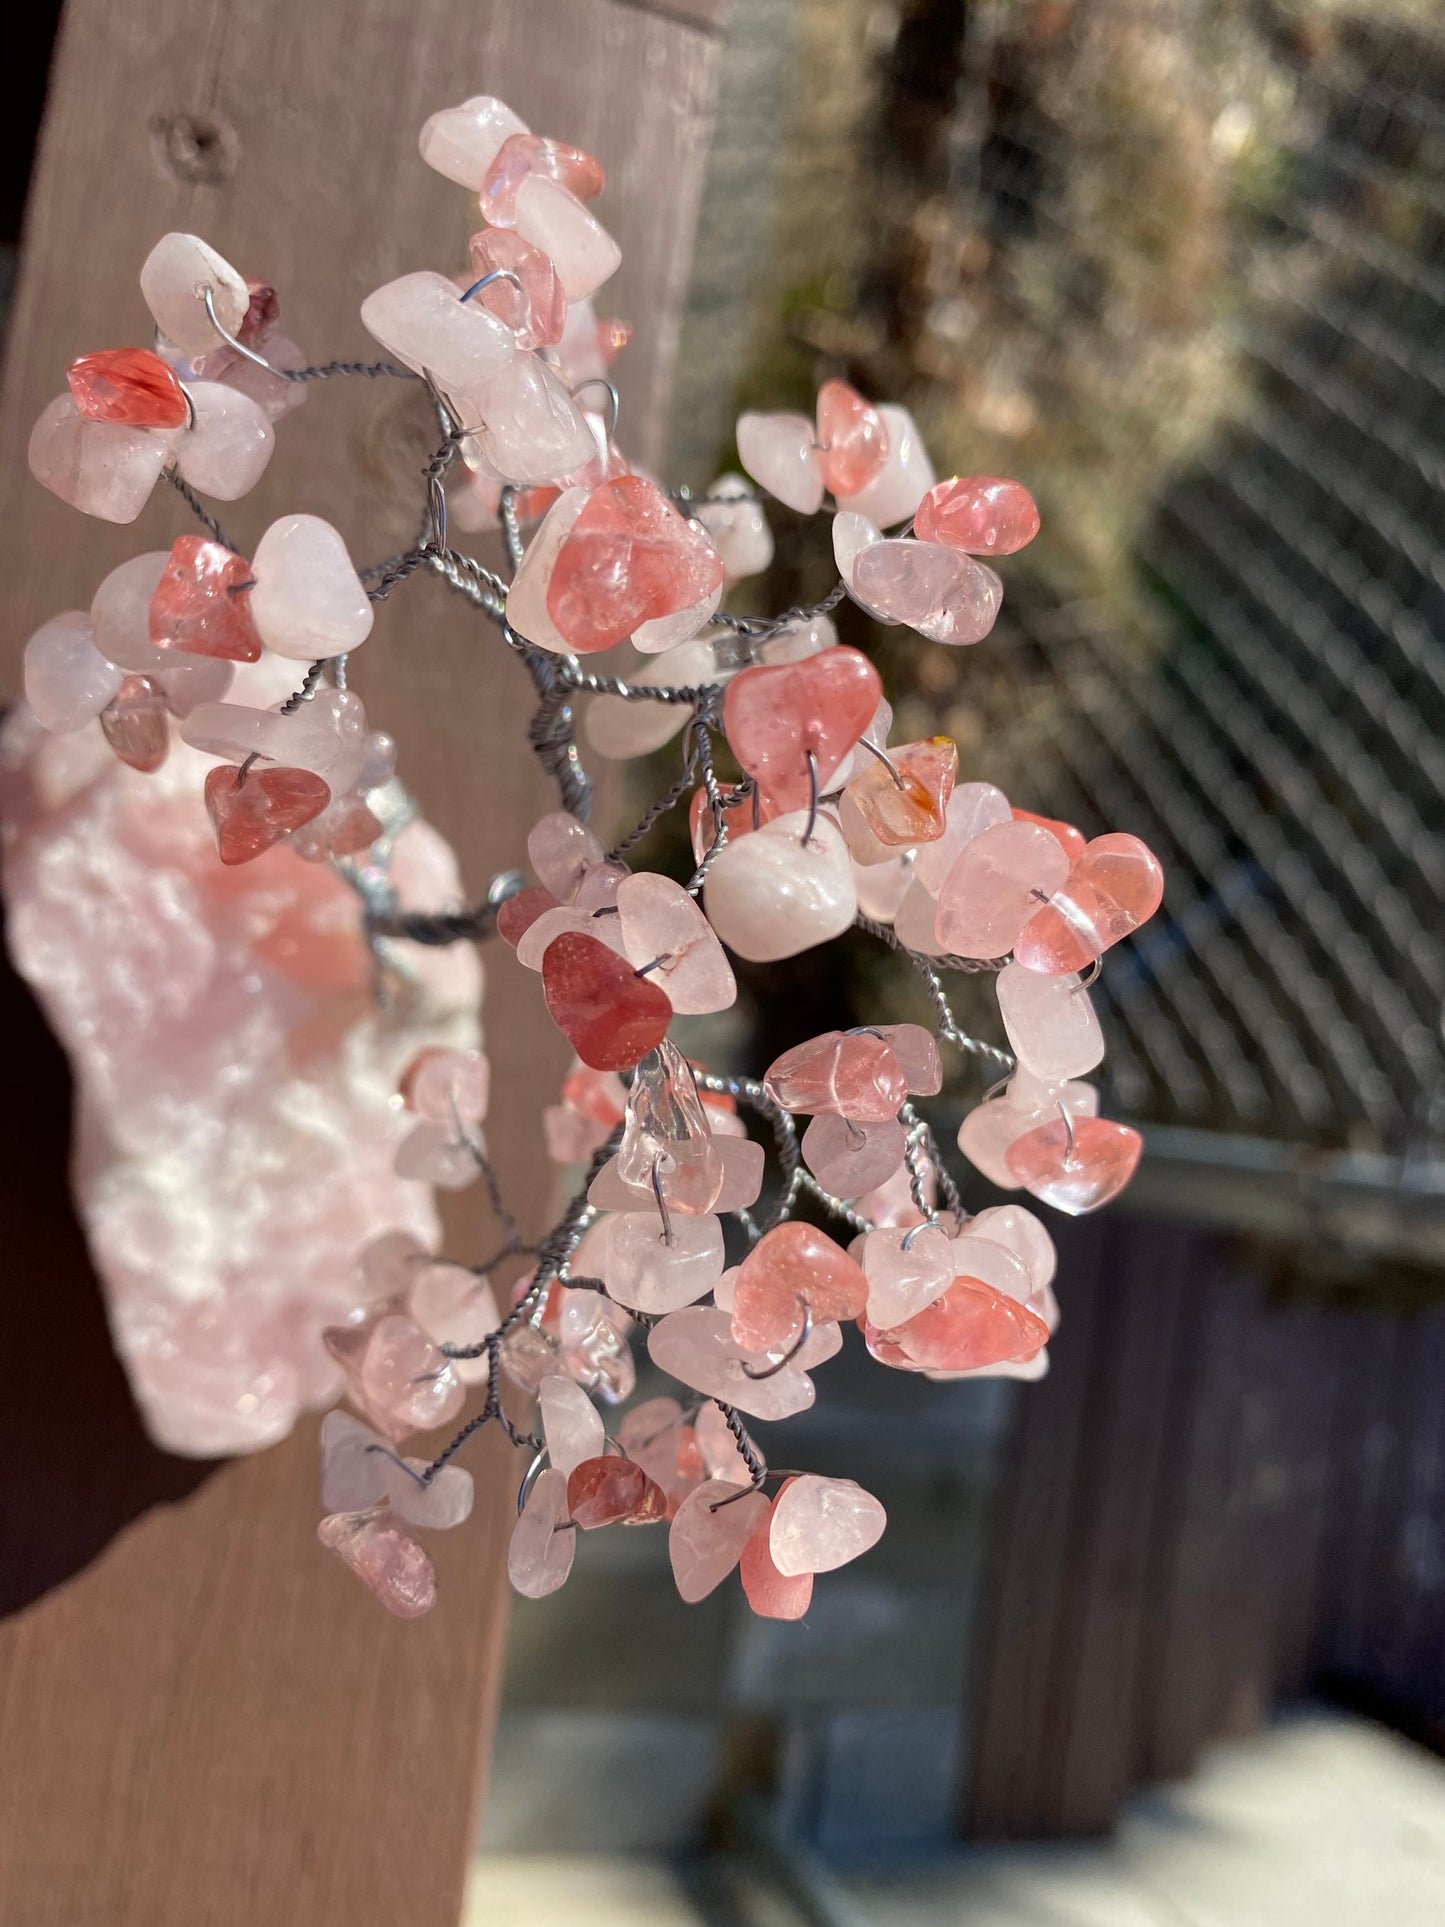 Cherry Blossom Tree of Life, Rose Quartz and Cherry Quartz Gem Tree, Crystal Home Decor